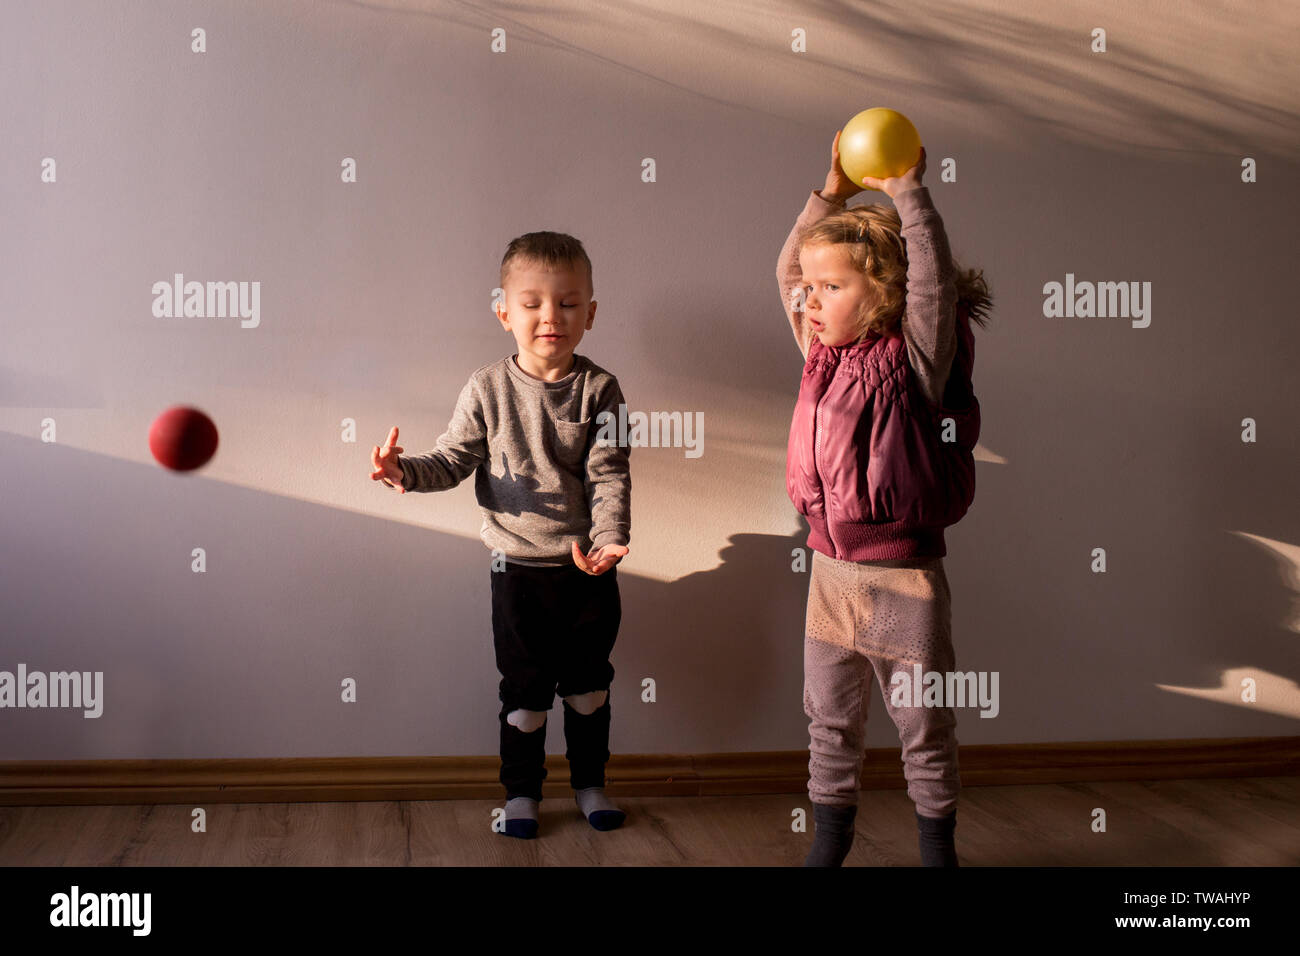 Zwei Kinder spielen, in einem sonnendurchfluteten Raum, mit kleinen hüpfenden Kugeln, wirft sie in die Luft Stockfoto